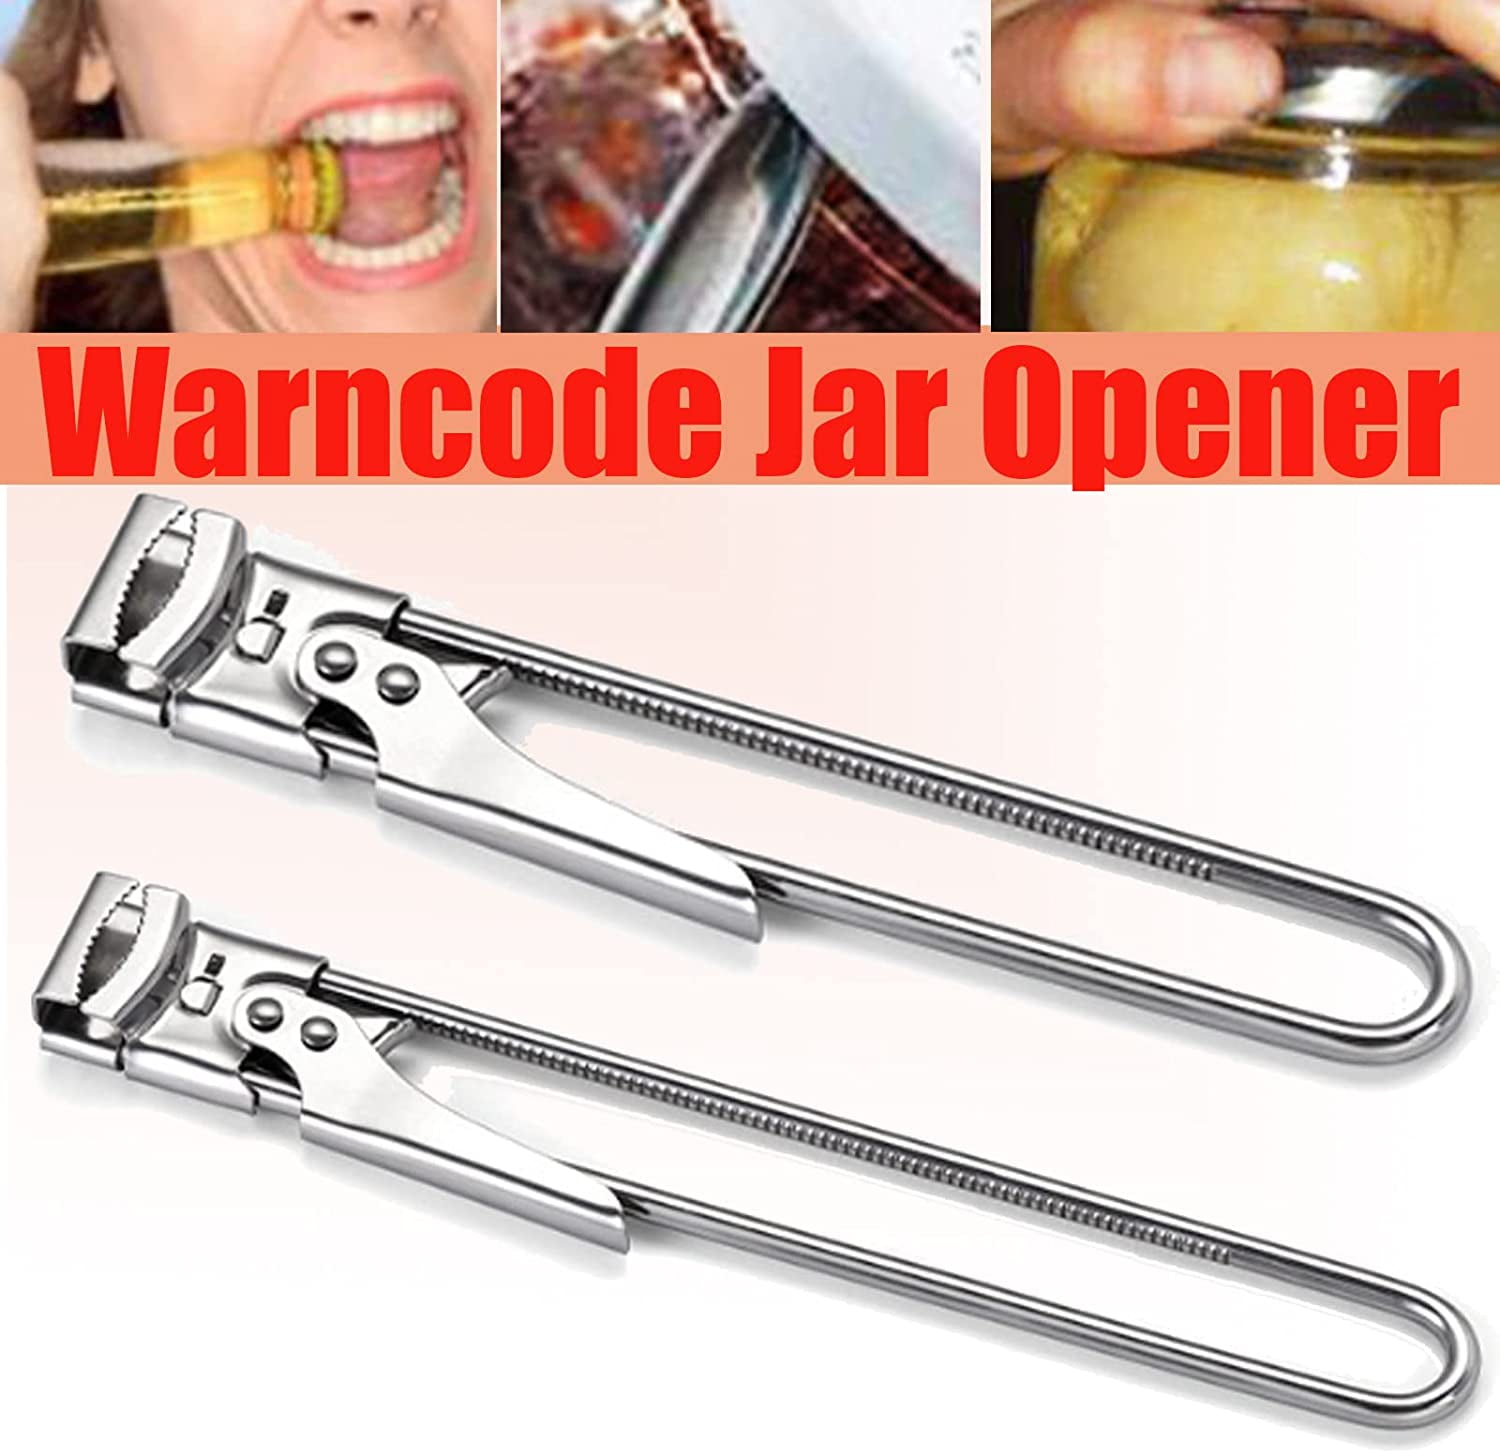 Warncode Jar Opener, Adjustable Stainless Steel Can Opener, Jar Opener Gripper Pad (1 Pcs)